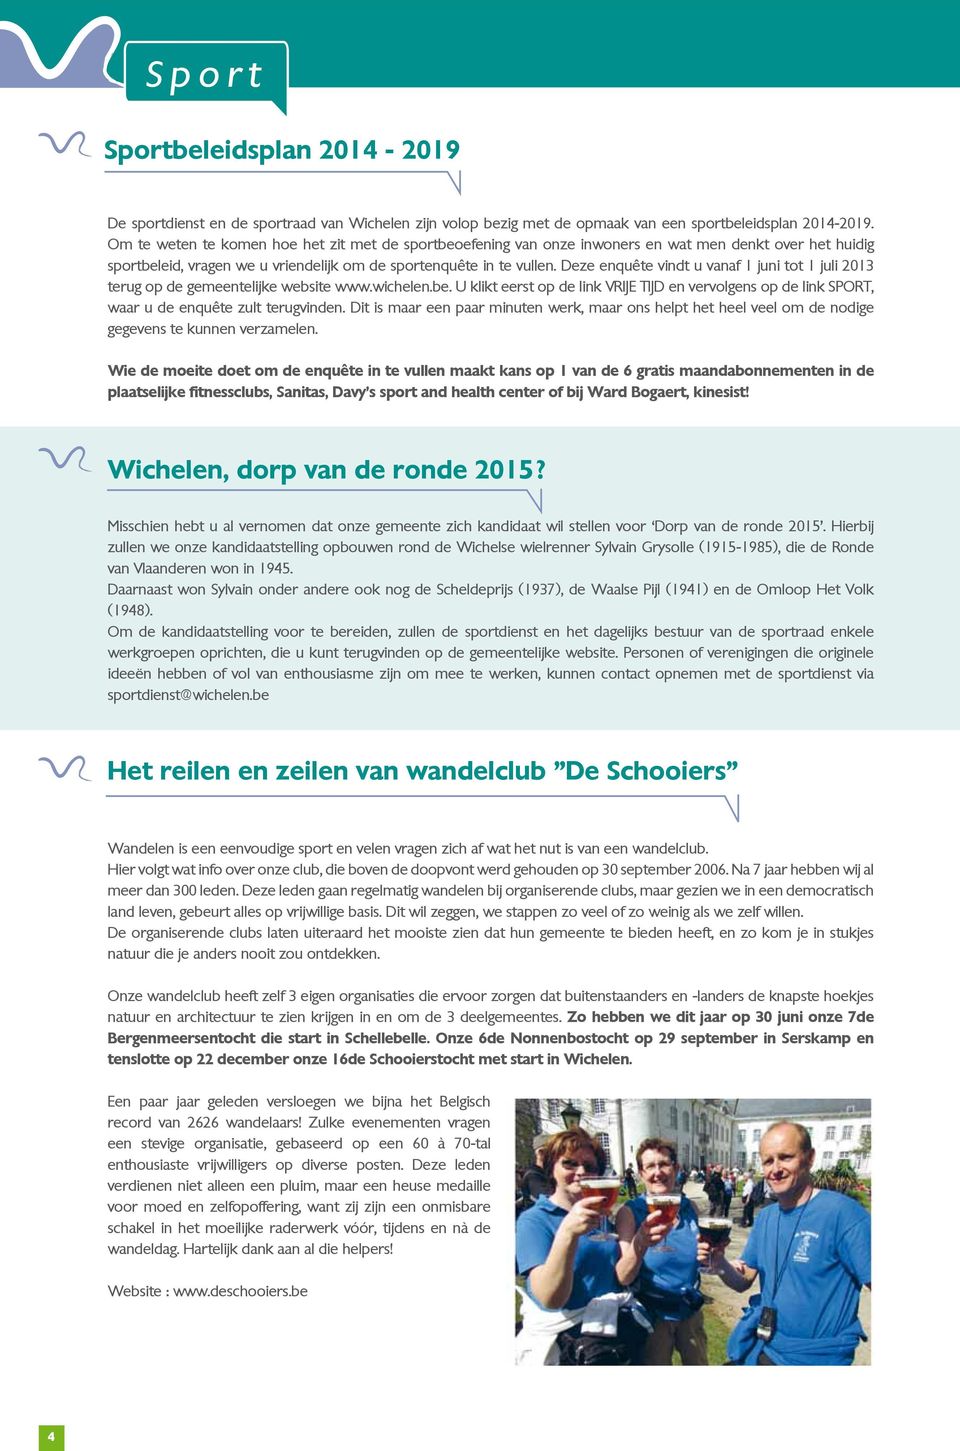 Deze enquête vindt u vanaf 1 juni tot 1 juli 2013 terug op de gemeentelijke website www.wichelen.be.